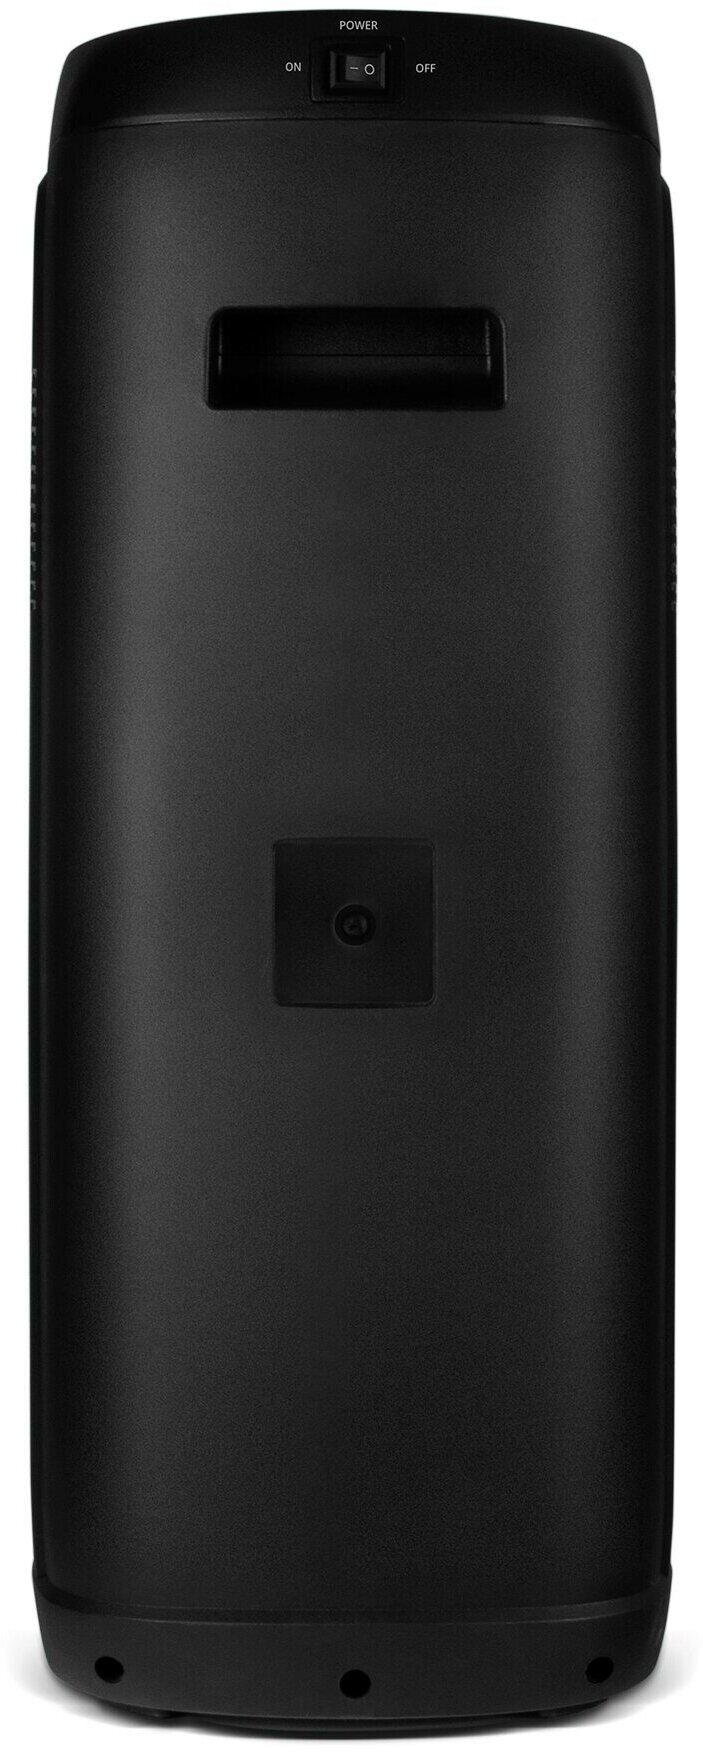 Мобильные колонки SVEN PS-770 2.0 чёрные (2x50W, mini Jack, USB, Bluetooth, FM, micro SD, NFC, LED-дисплей, ПДУ, 4400 мA, LED подсветка)